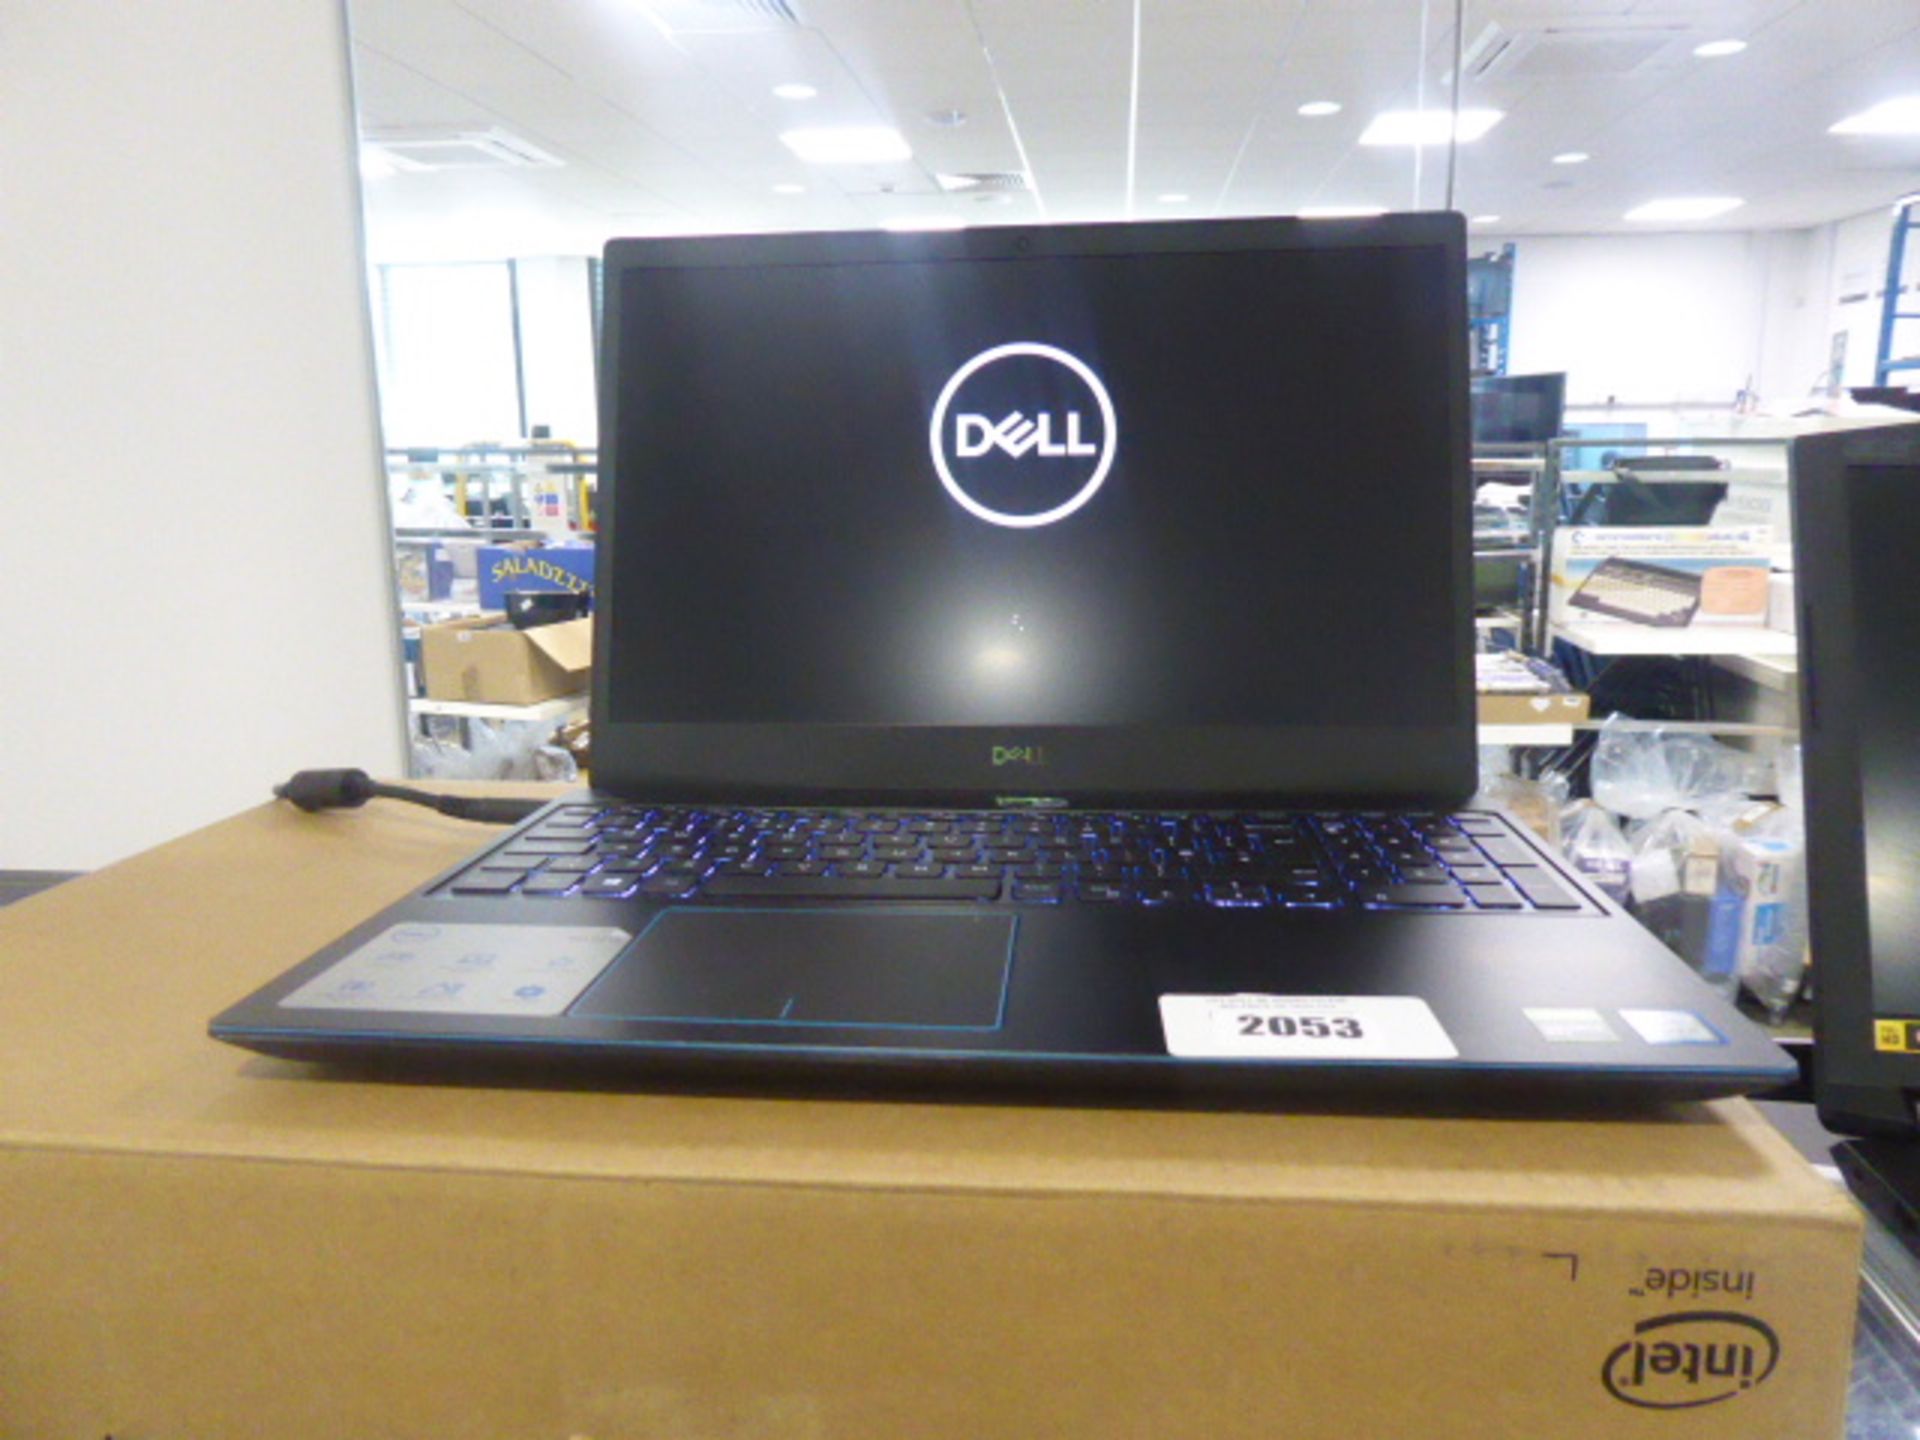 Dell G315 laptop model 3590 intel i7 9th gen processor 8gb ram 256gb ssd GTX 1660 TI graphics